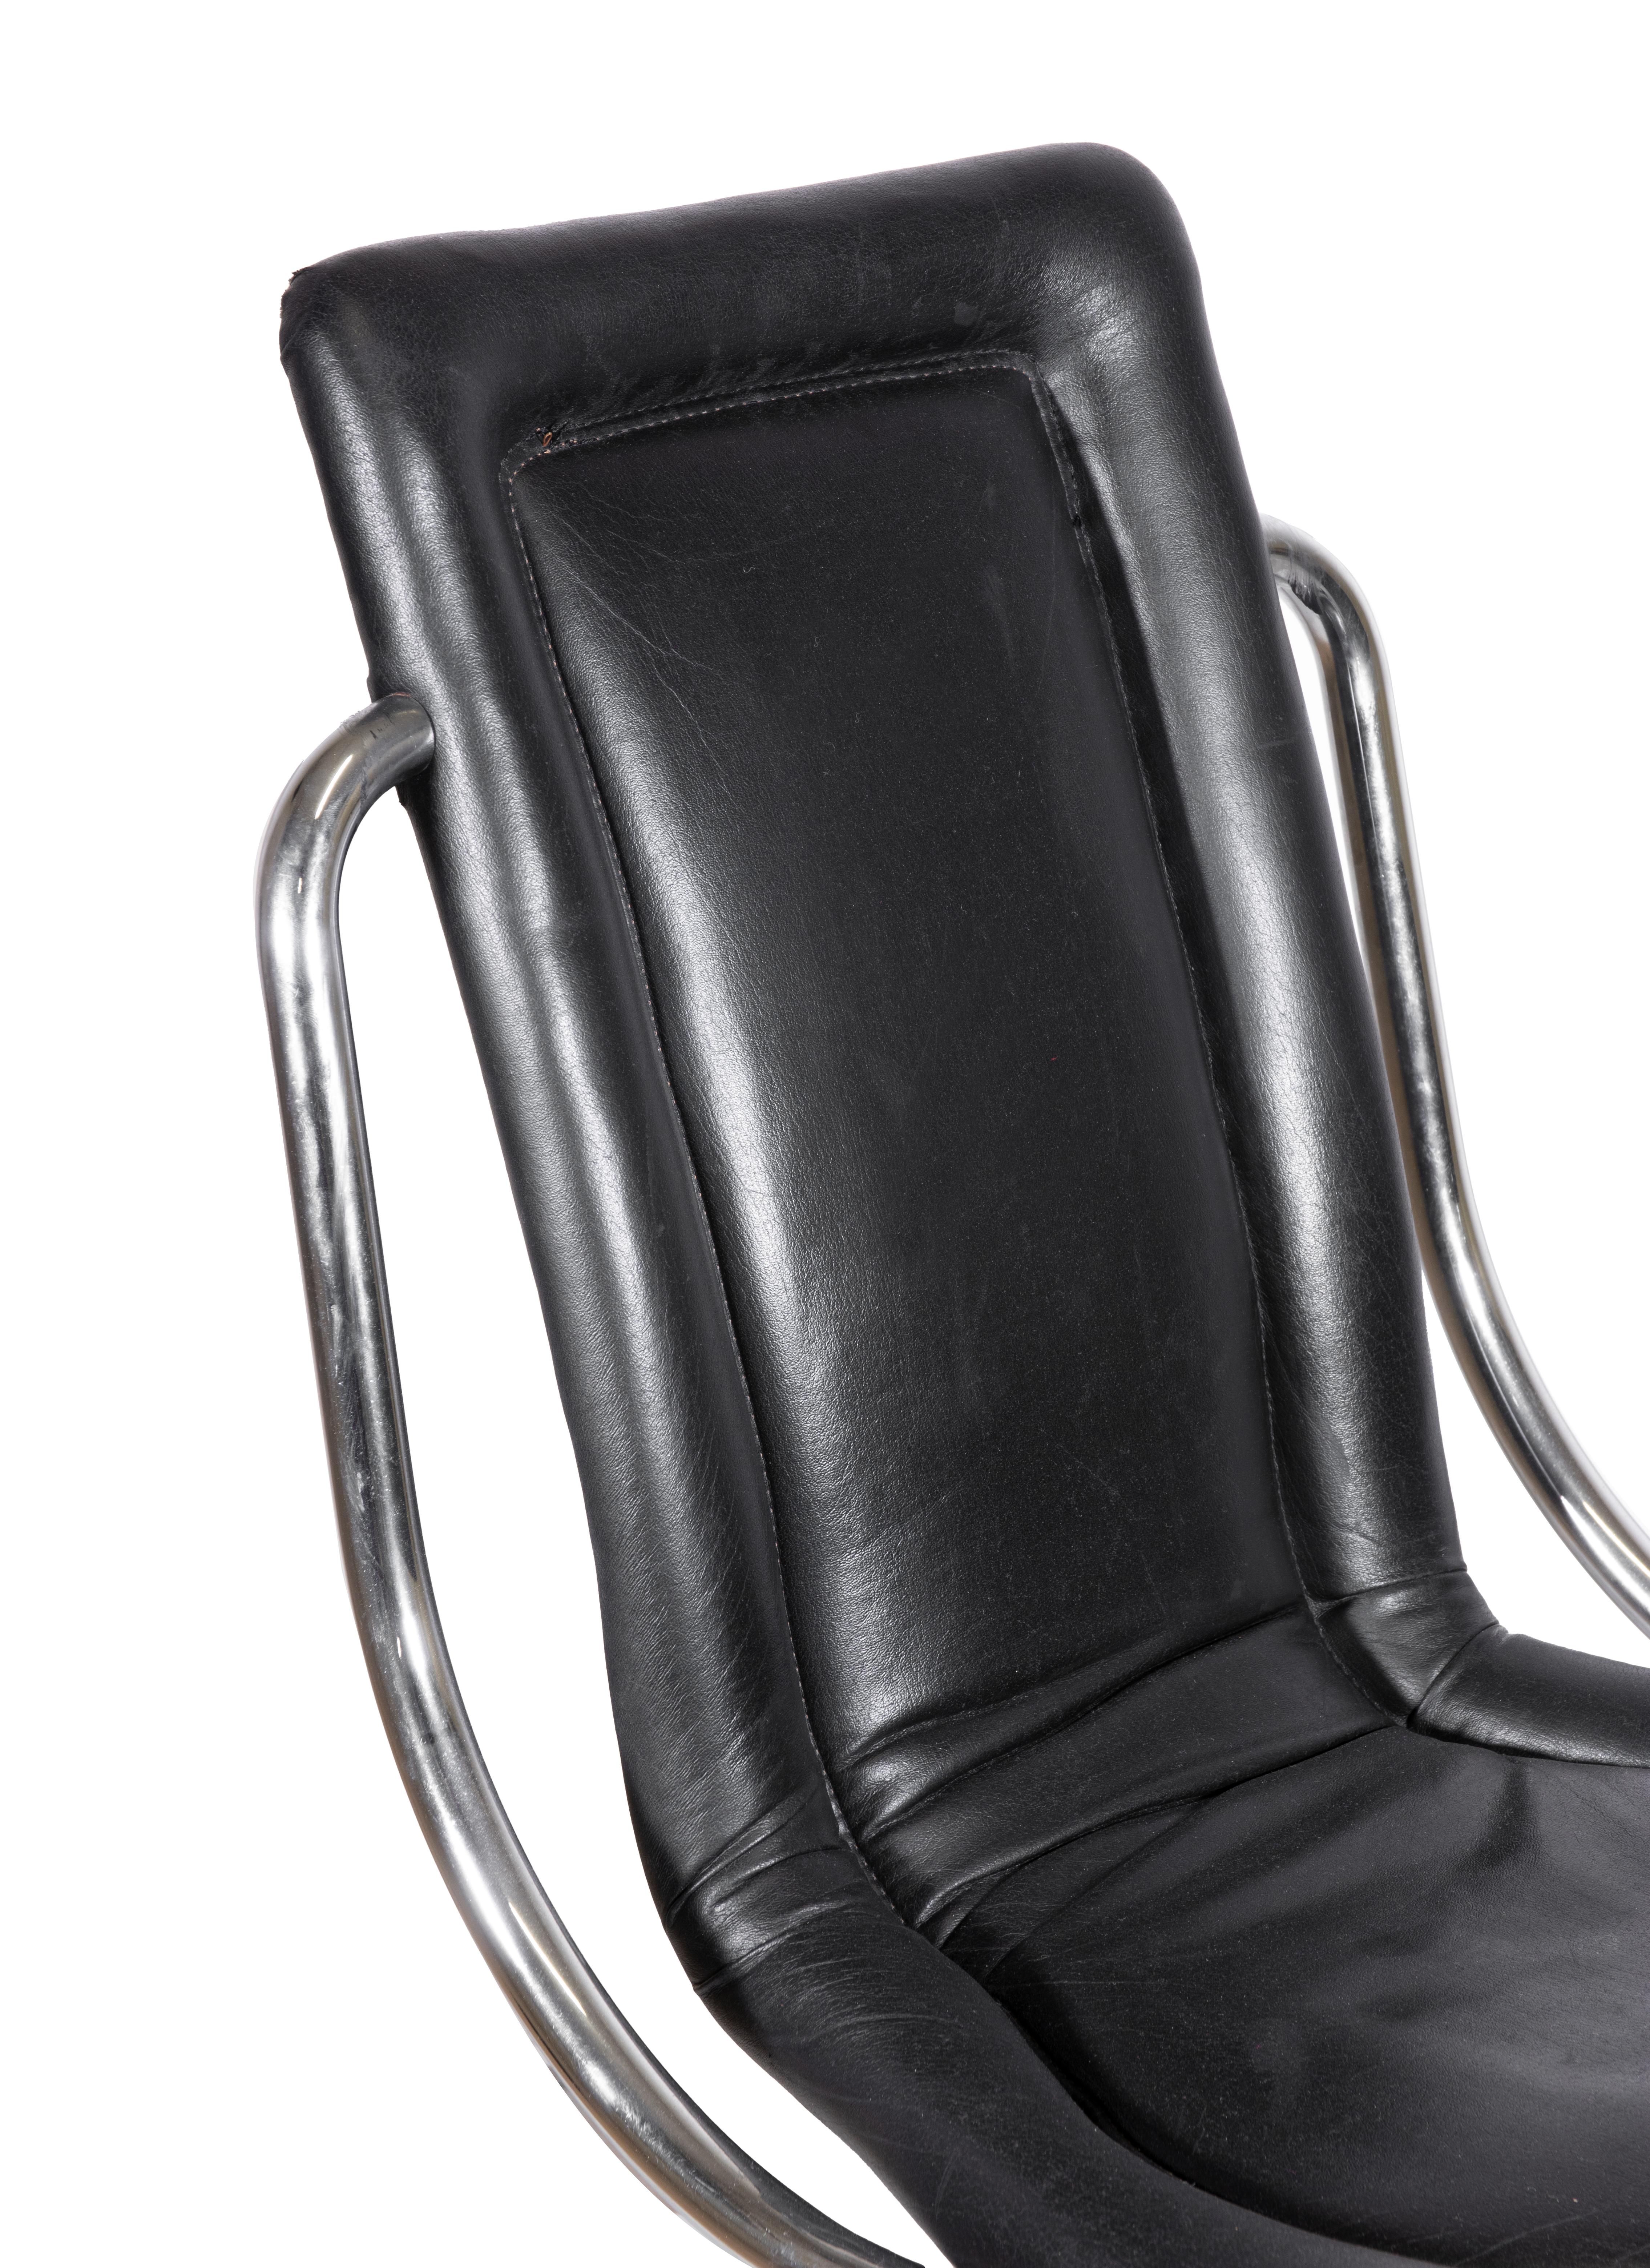 Six chaises de Tecnosalotto, Italie, années 1970.

Acier tubulaire et cuir noir.

h70 x 58 x 47 cm. 

Profondeur d'assise 39 cm, hauteur d'assise 44 cm. 

Bon état.